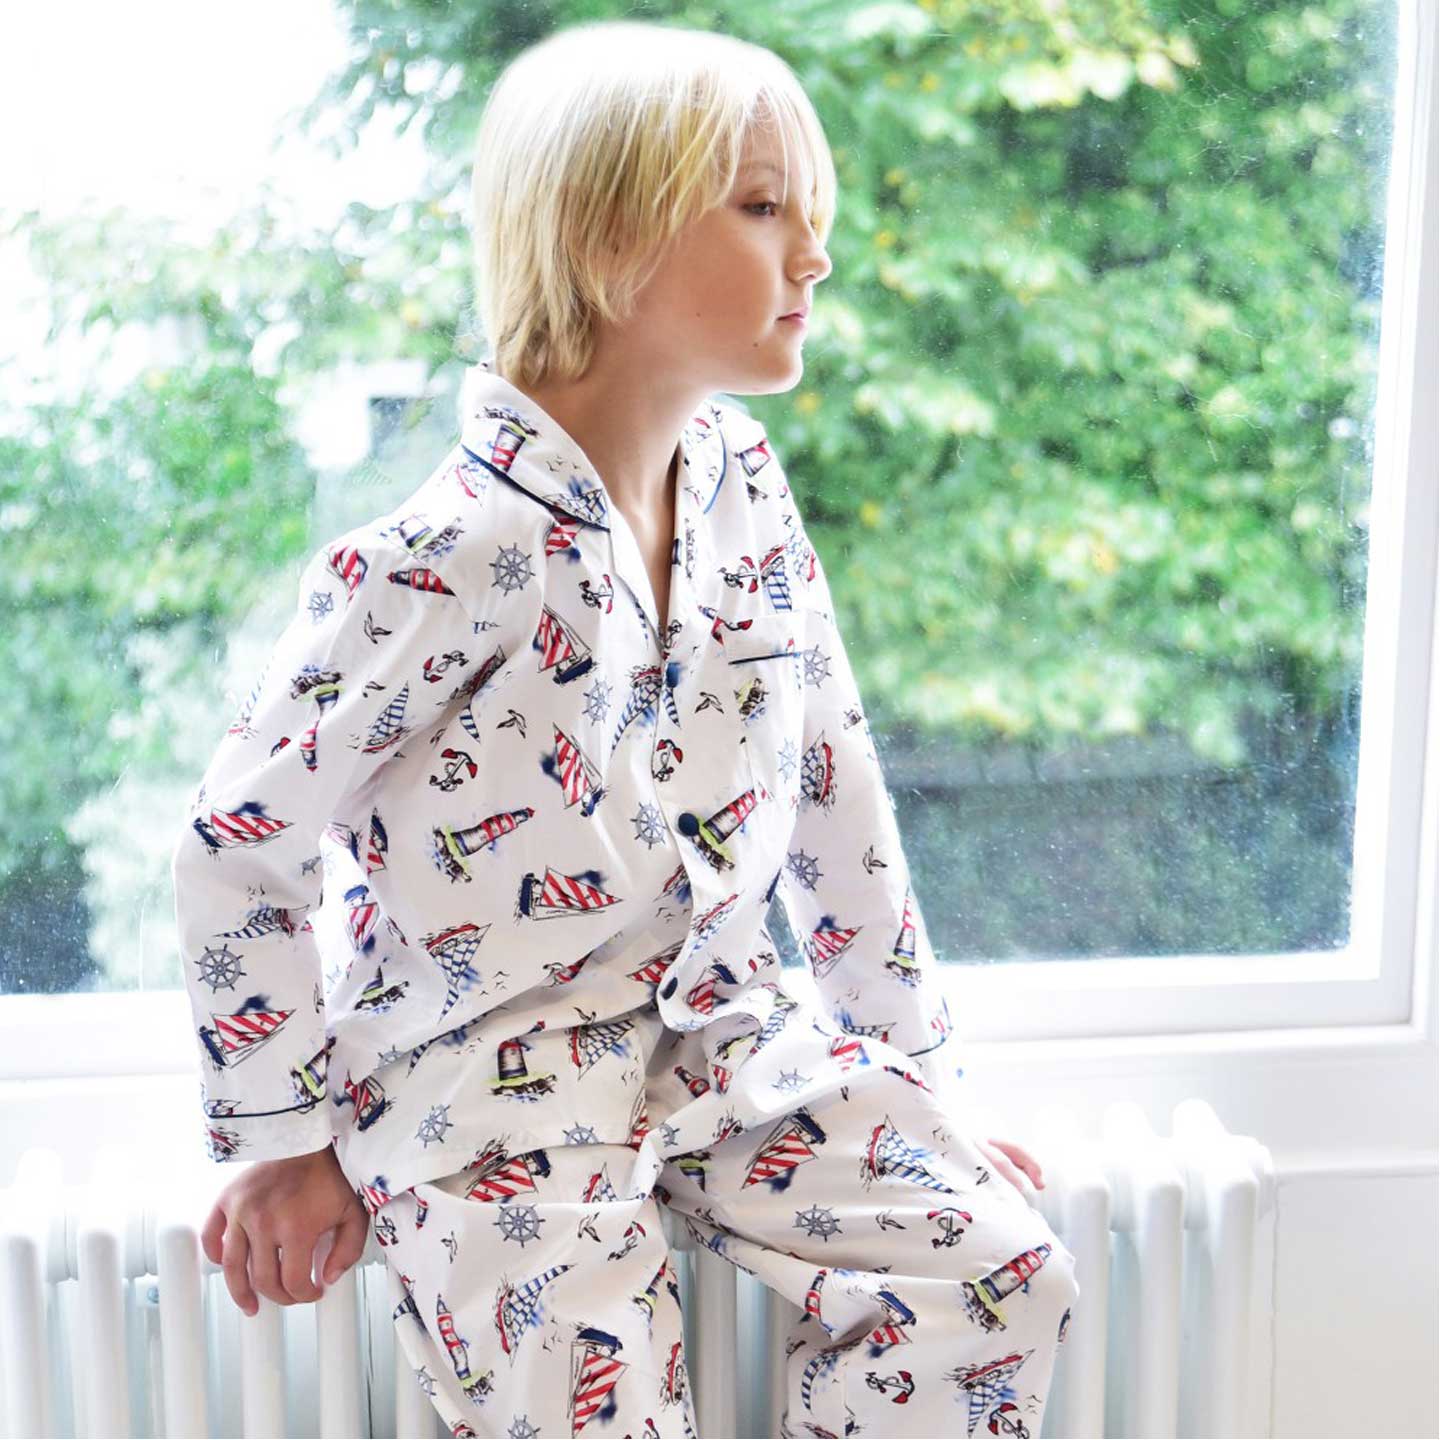 Nautical Print Pyjama